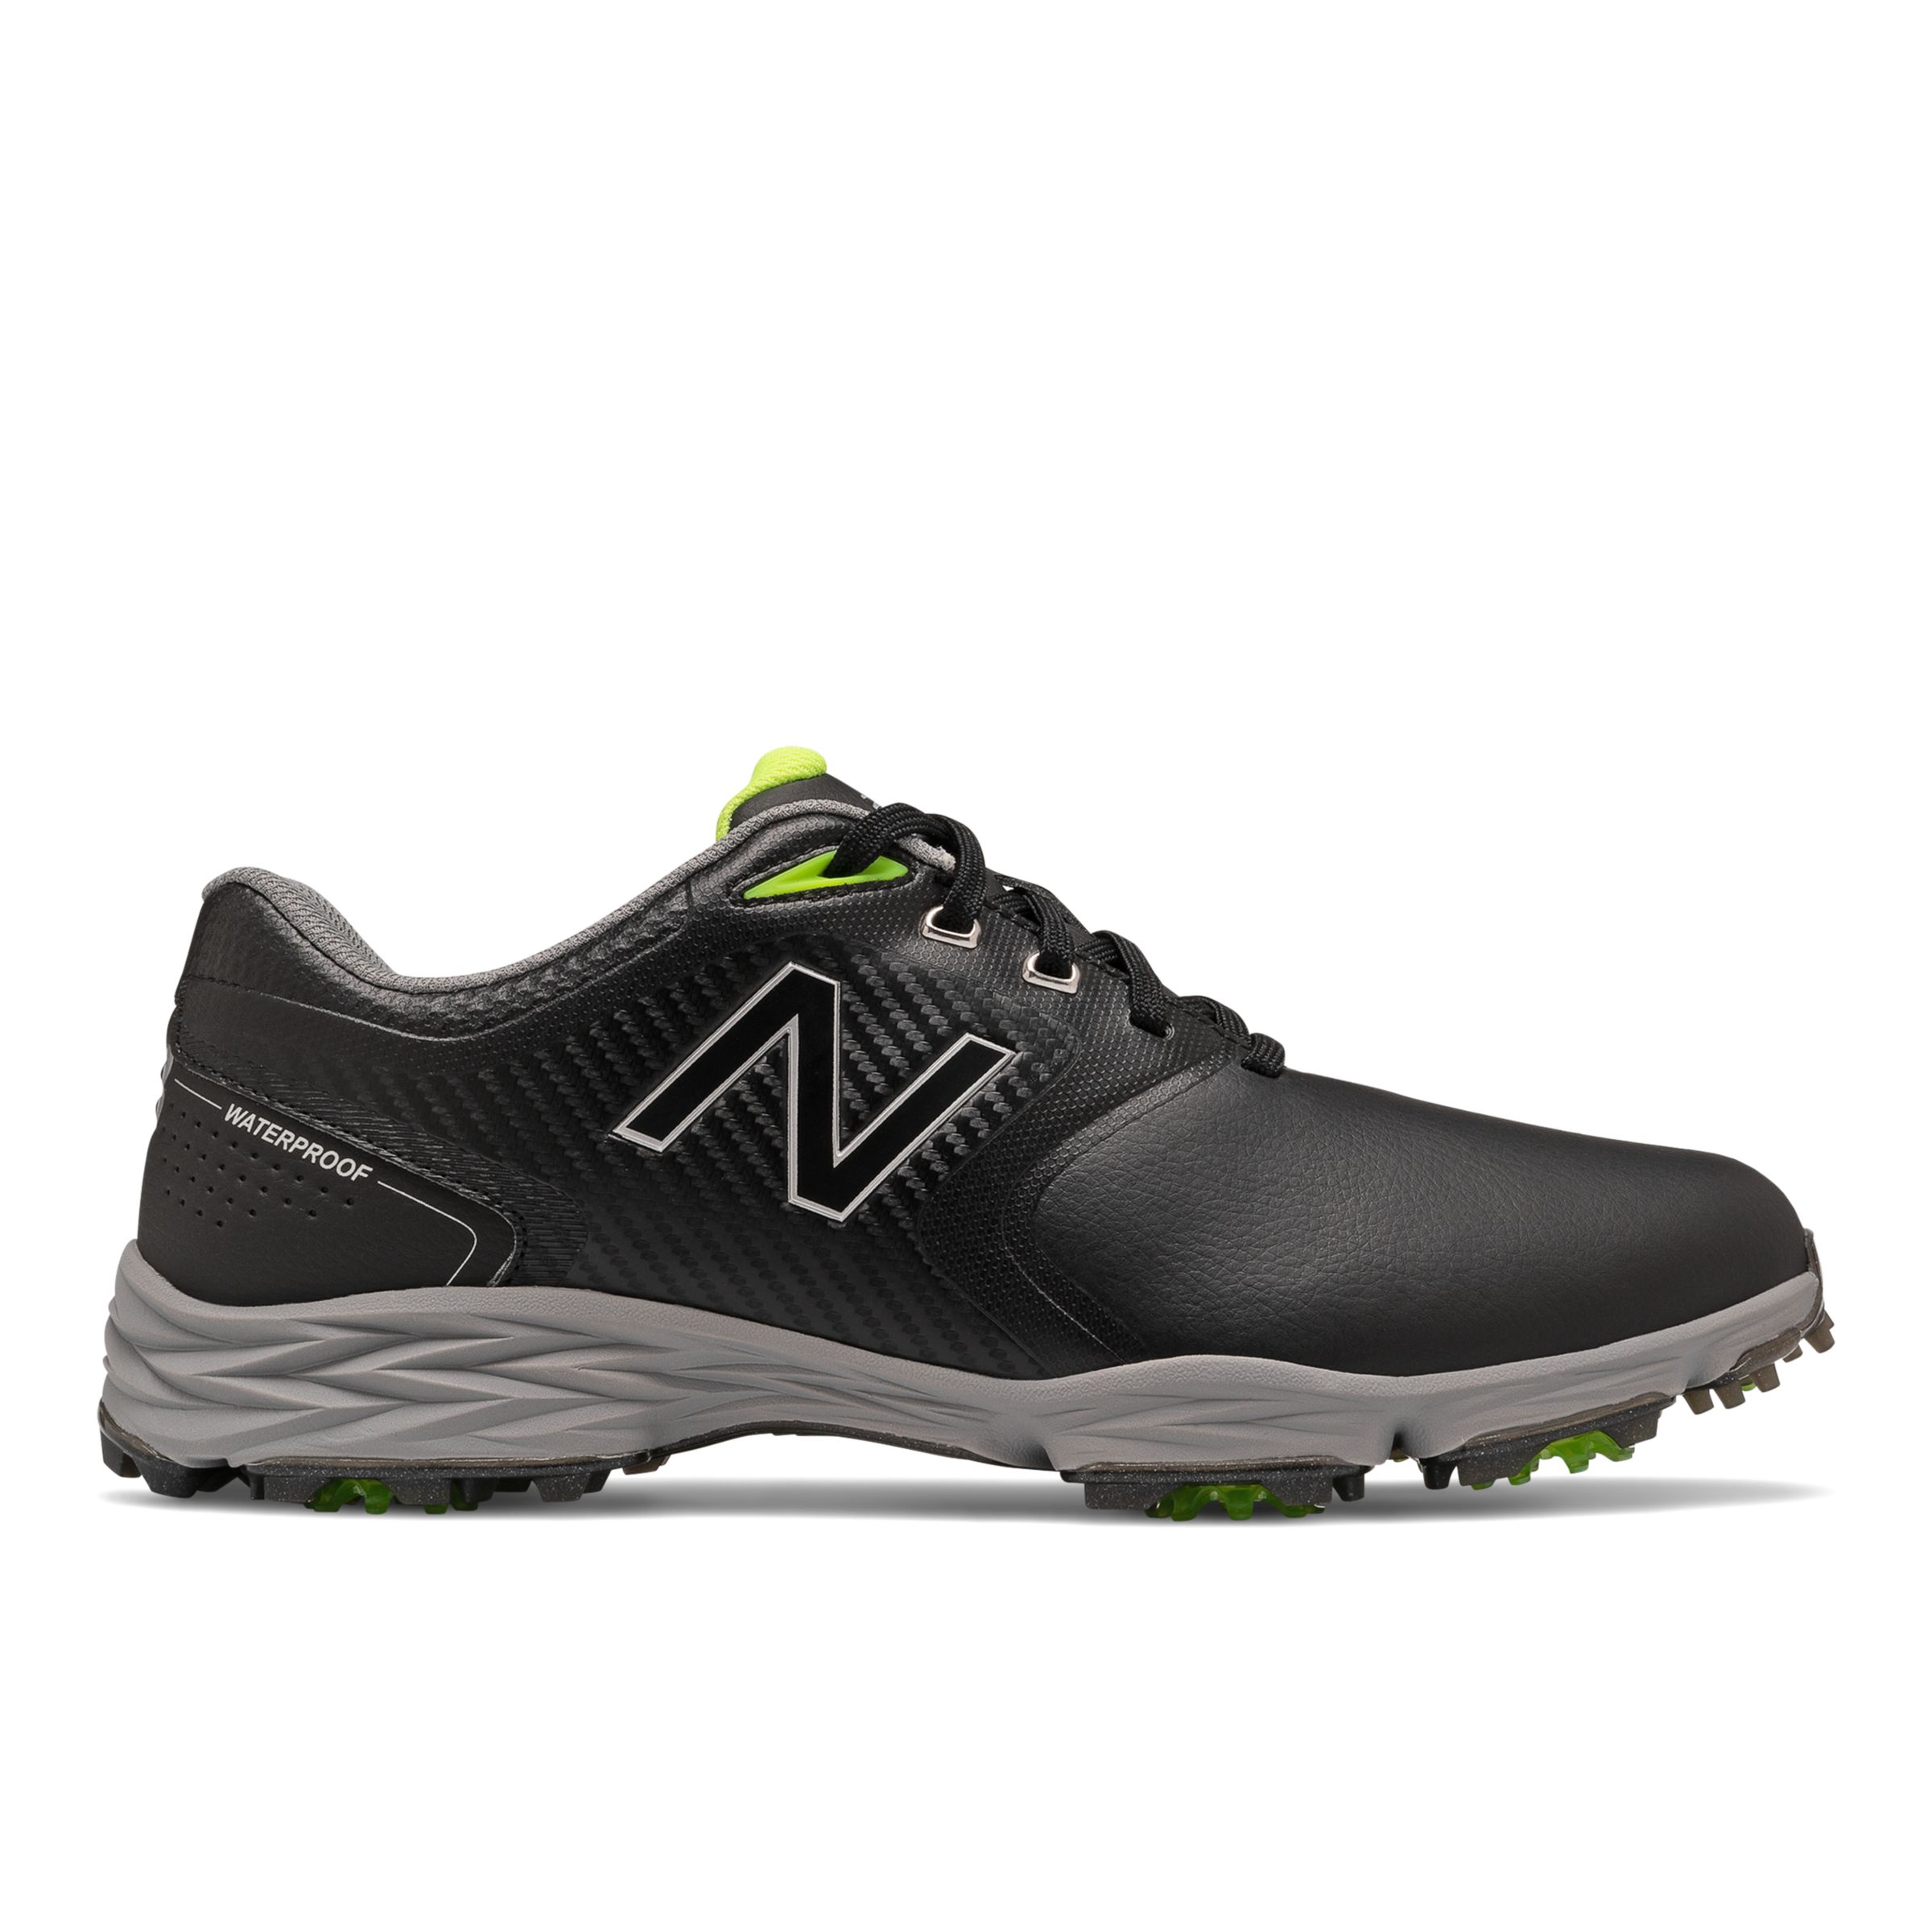 new balance men's nbg1701 spiked golf shoe